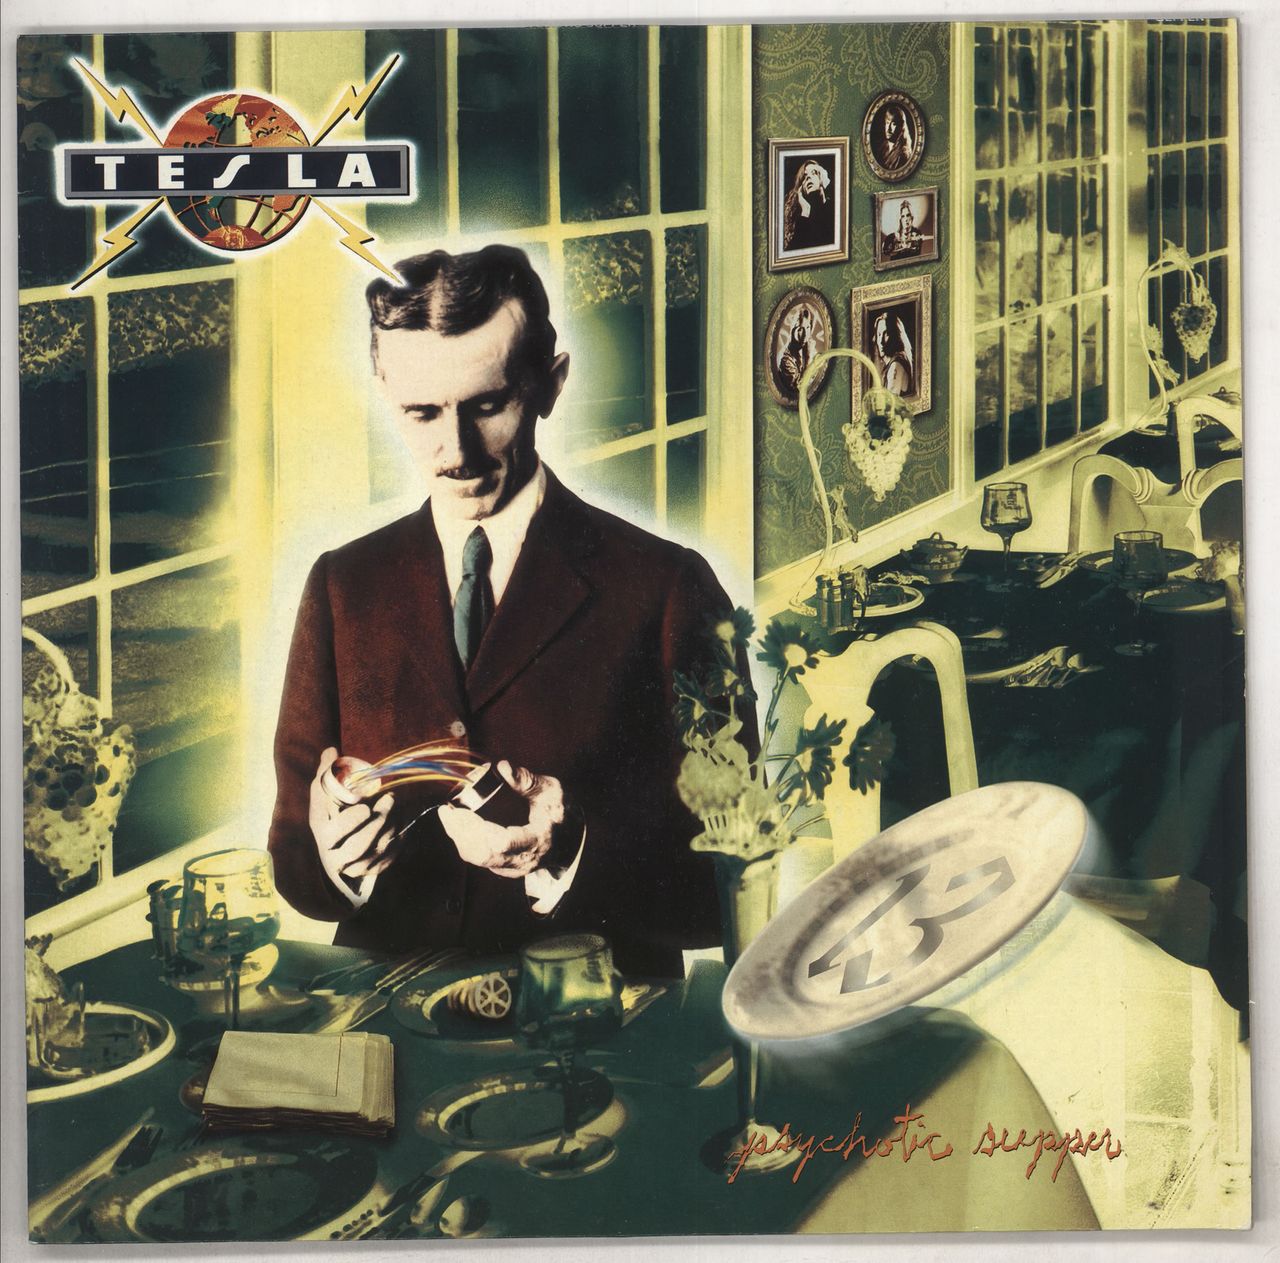 Tesla Psychotic Supper UK Vinyl LP — RareVinyl.com